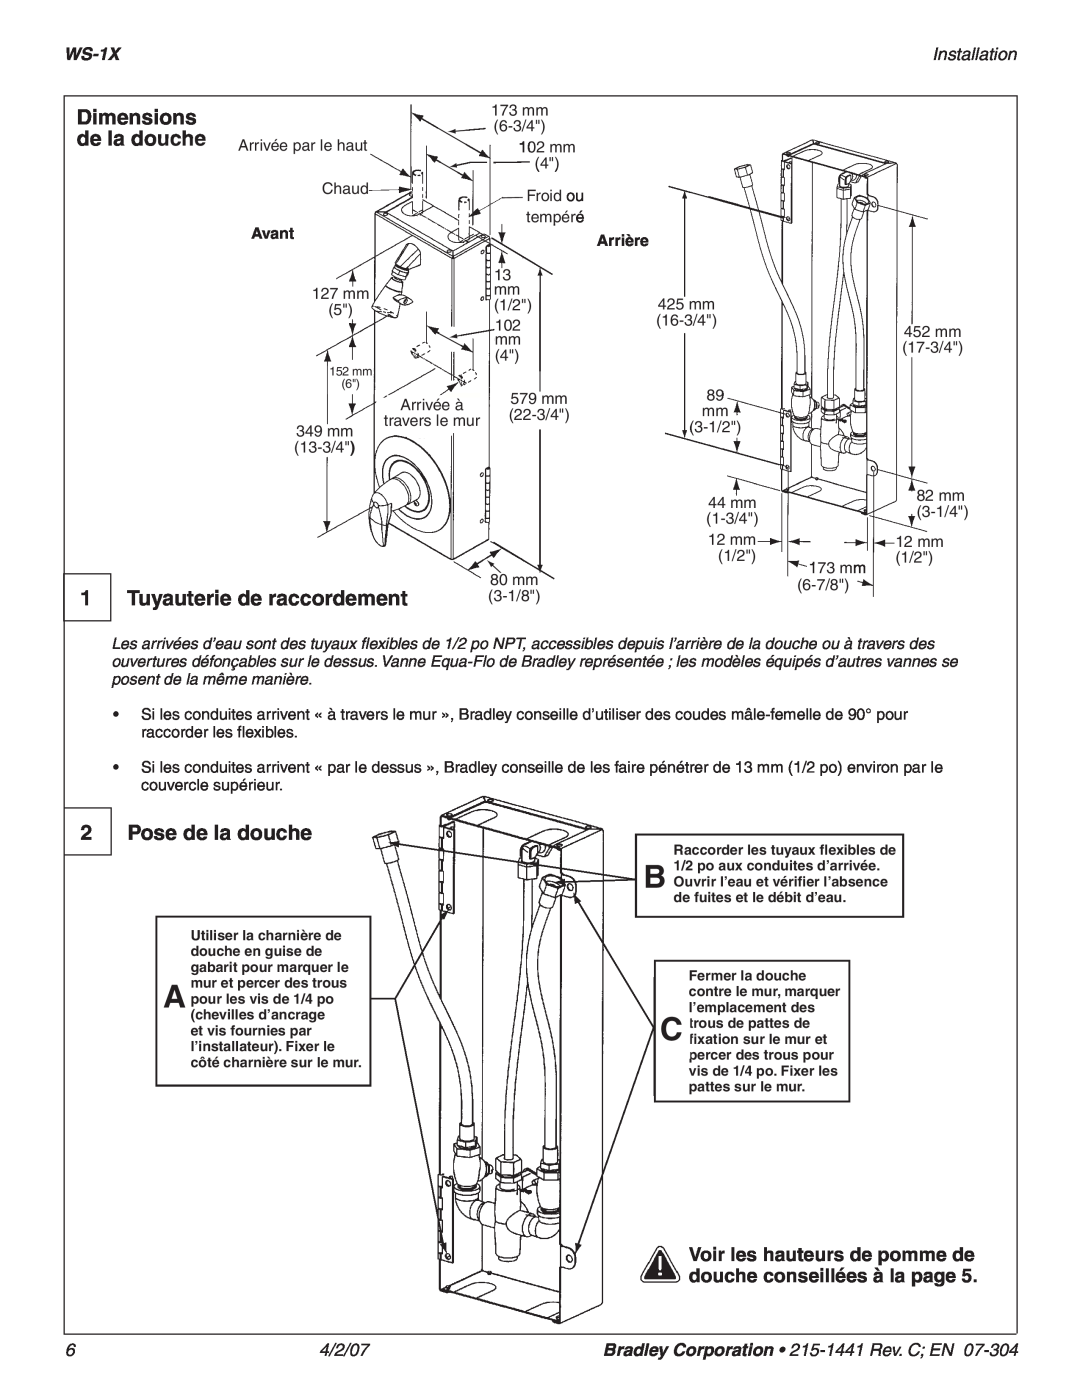 Bradley Smoker WS-1X Dimensions, de la douche Arrivée, Tuyauterie de raccordement, Pose de la douche, Installation, 4/2/07 